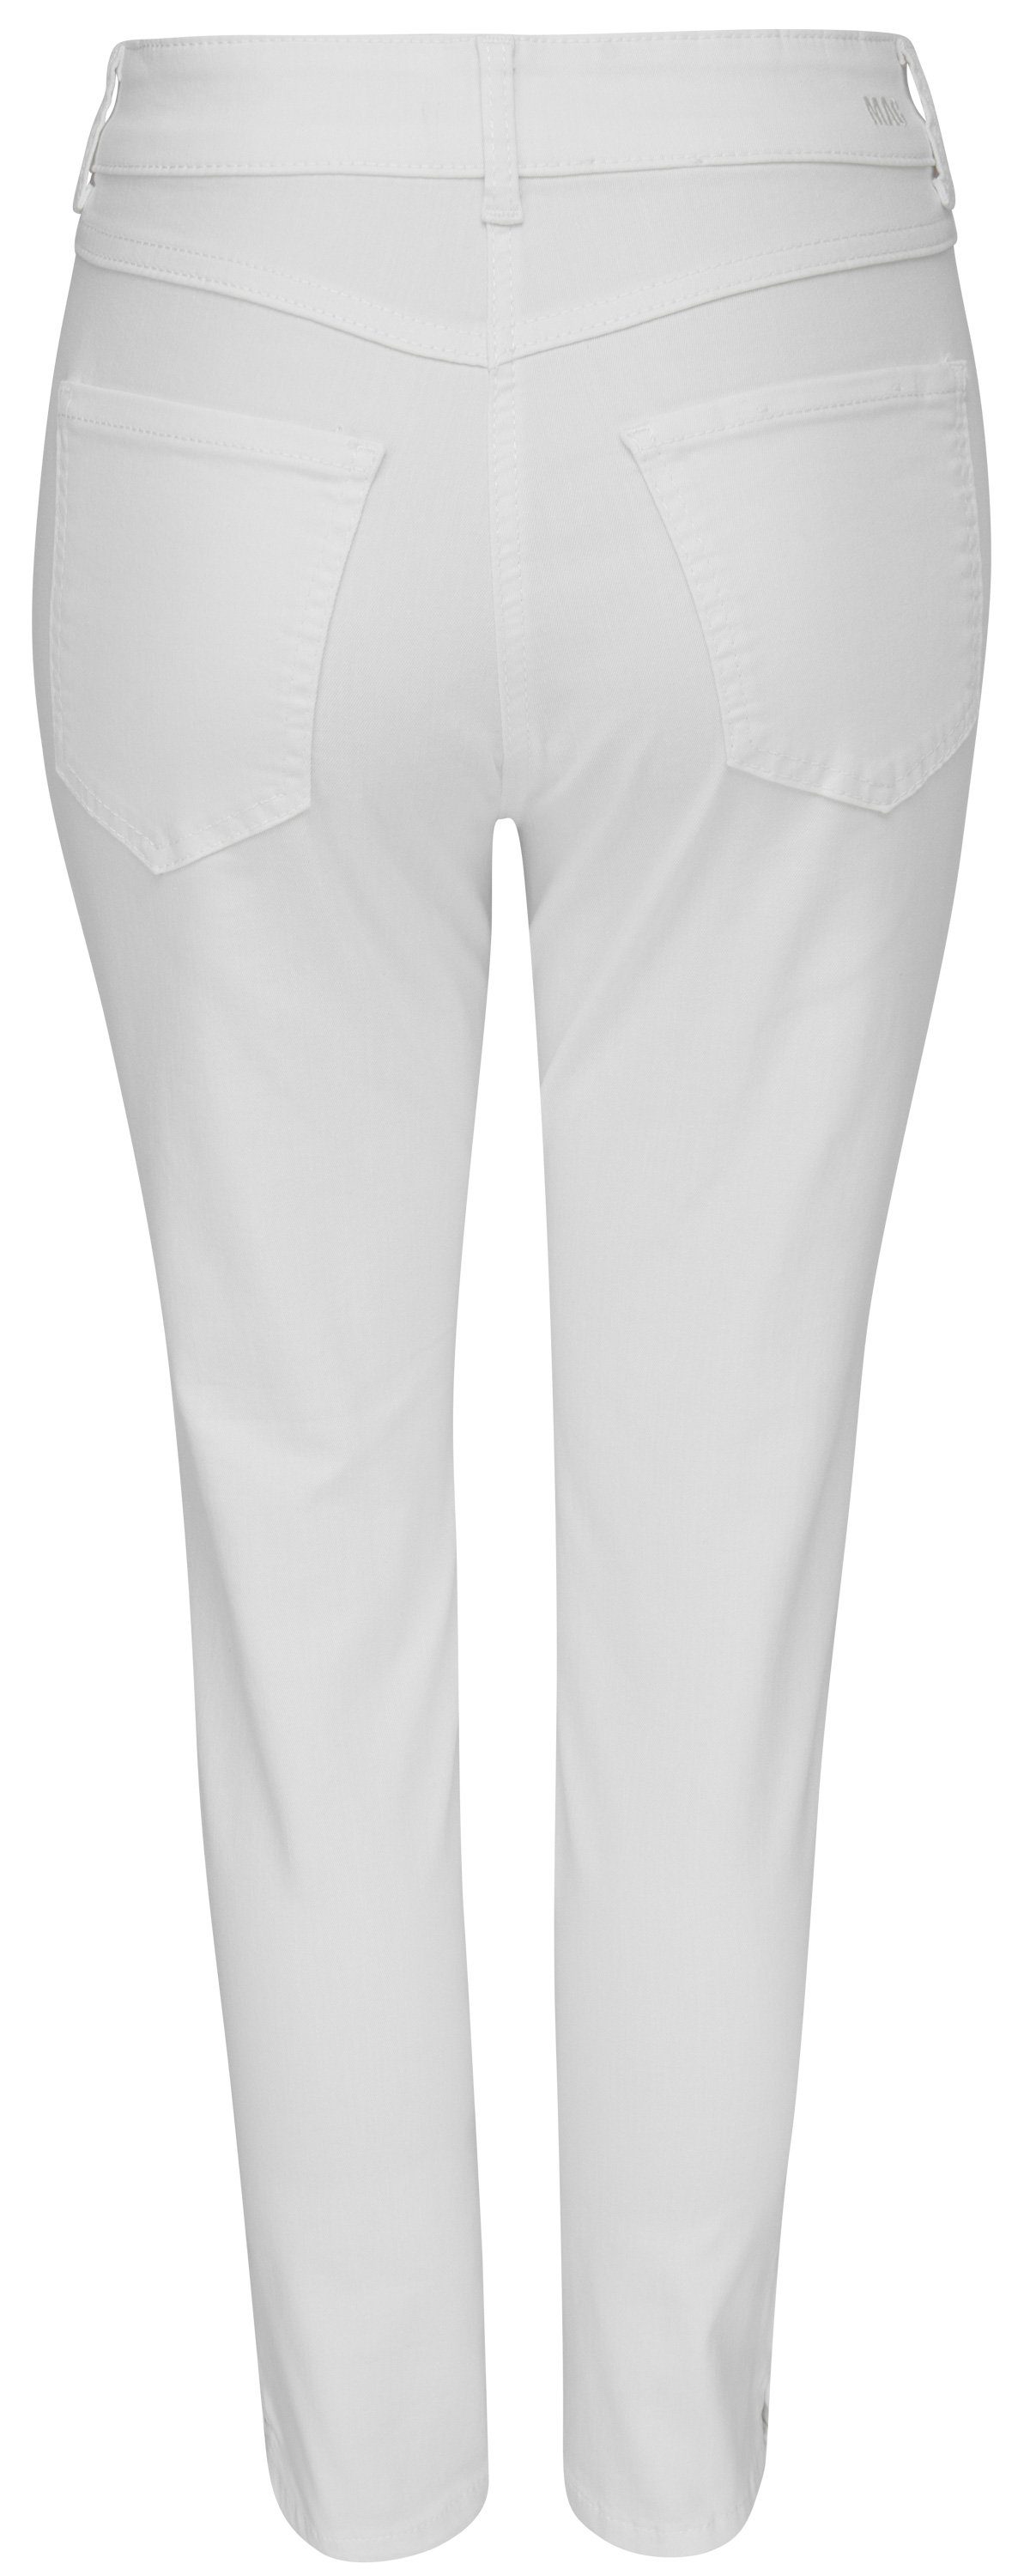 5260-90-0394 white SUMMER Stretch-Jeans 7/8 denim ANGELA nature MAC MAC D010